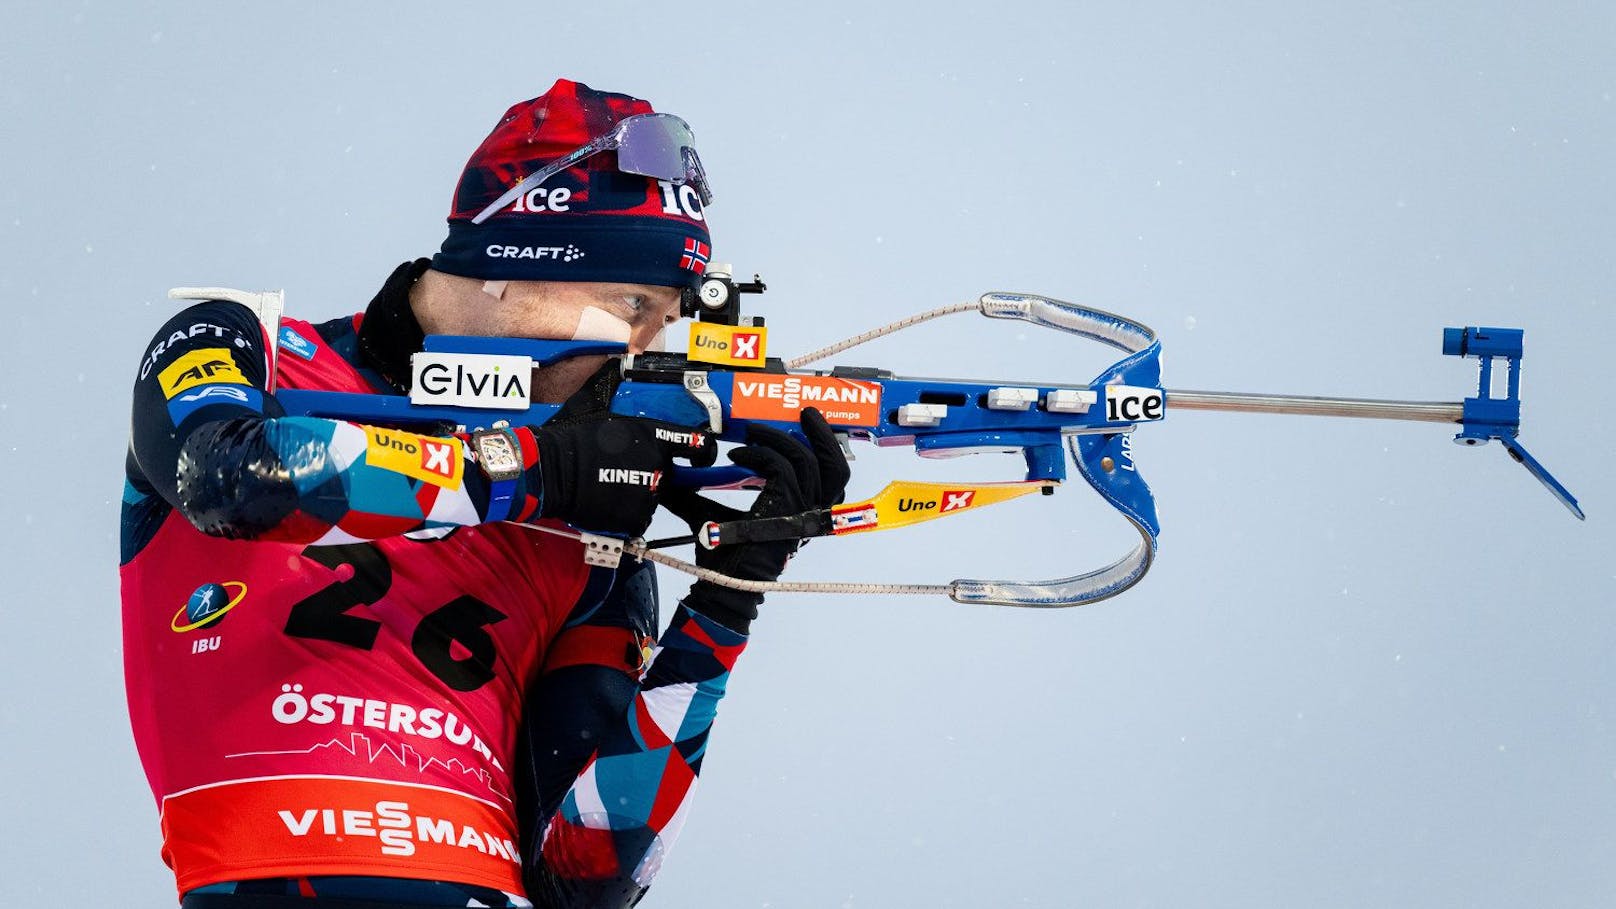 "Lebensgefährlich!" Biathlon-Star schlägt Alarm